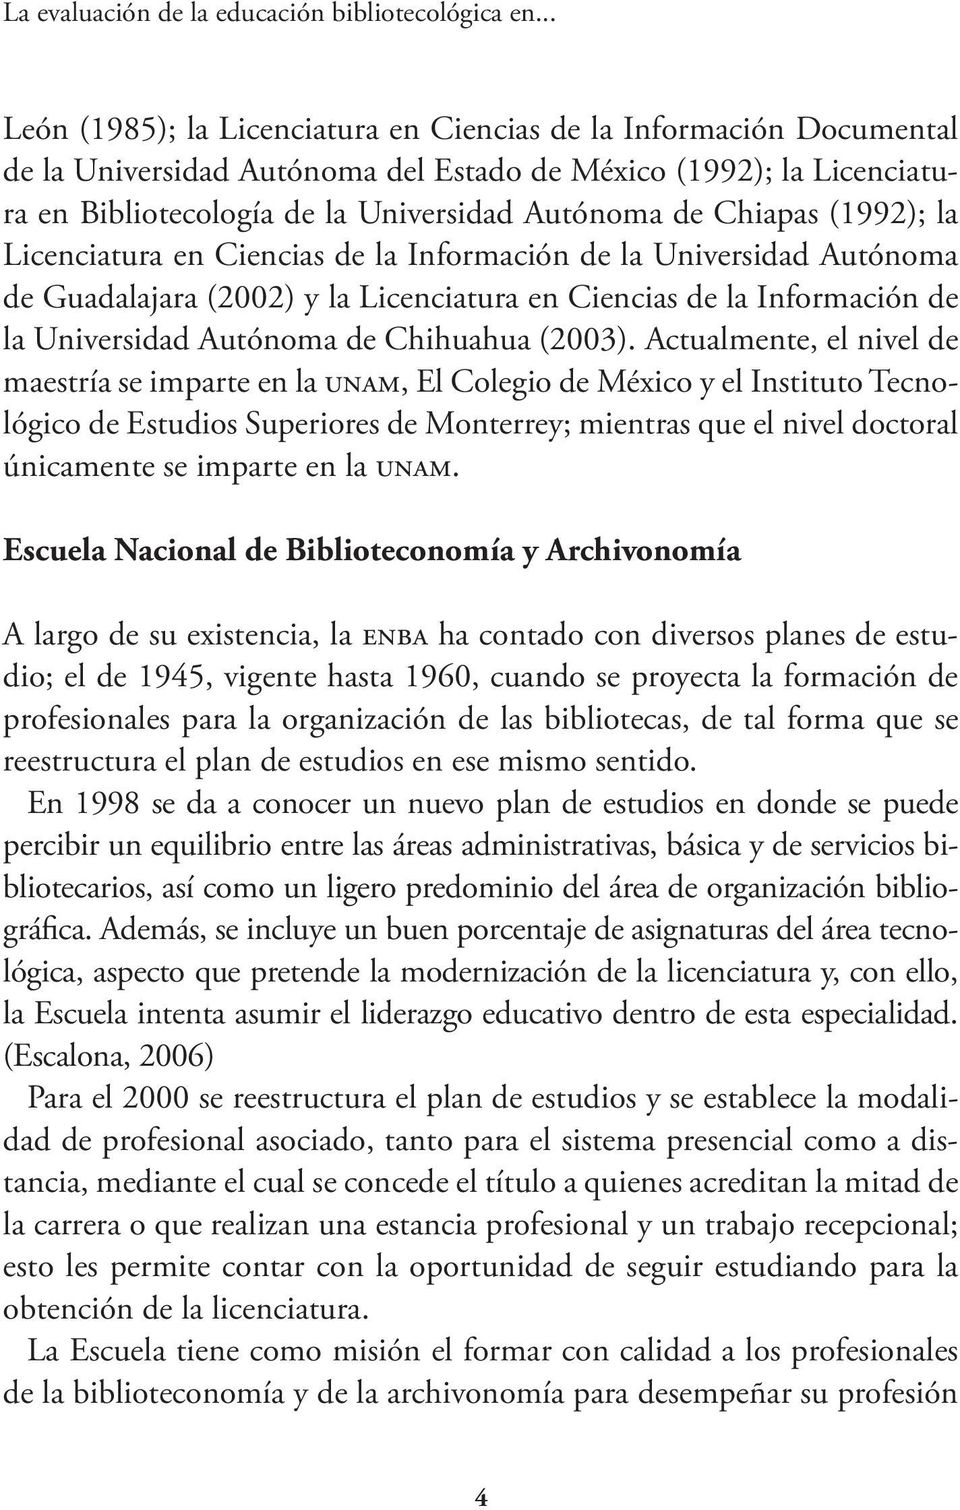 Chiapas (1992); la Licenciatura en Ciencias de la Información de la Universidad Autónoma de Guadalajara (2002) y la Licenciatura en Ciencias de la Información de la Universidad Autónoma de Chihuahua